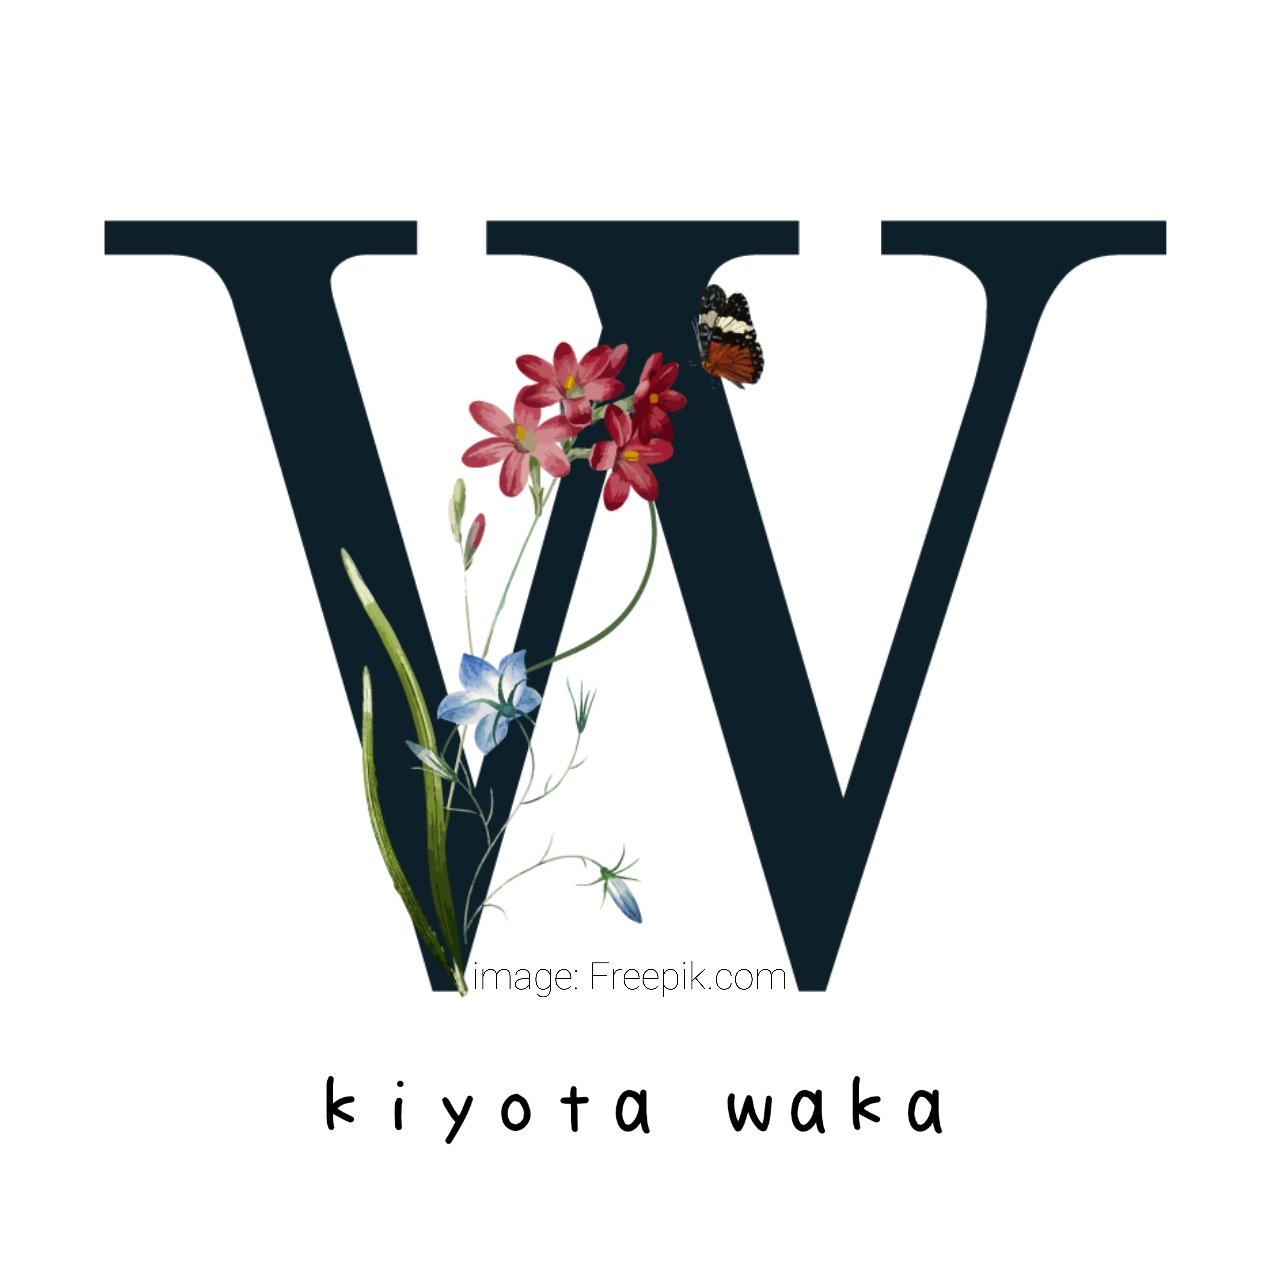 Kiyota_Waka